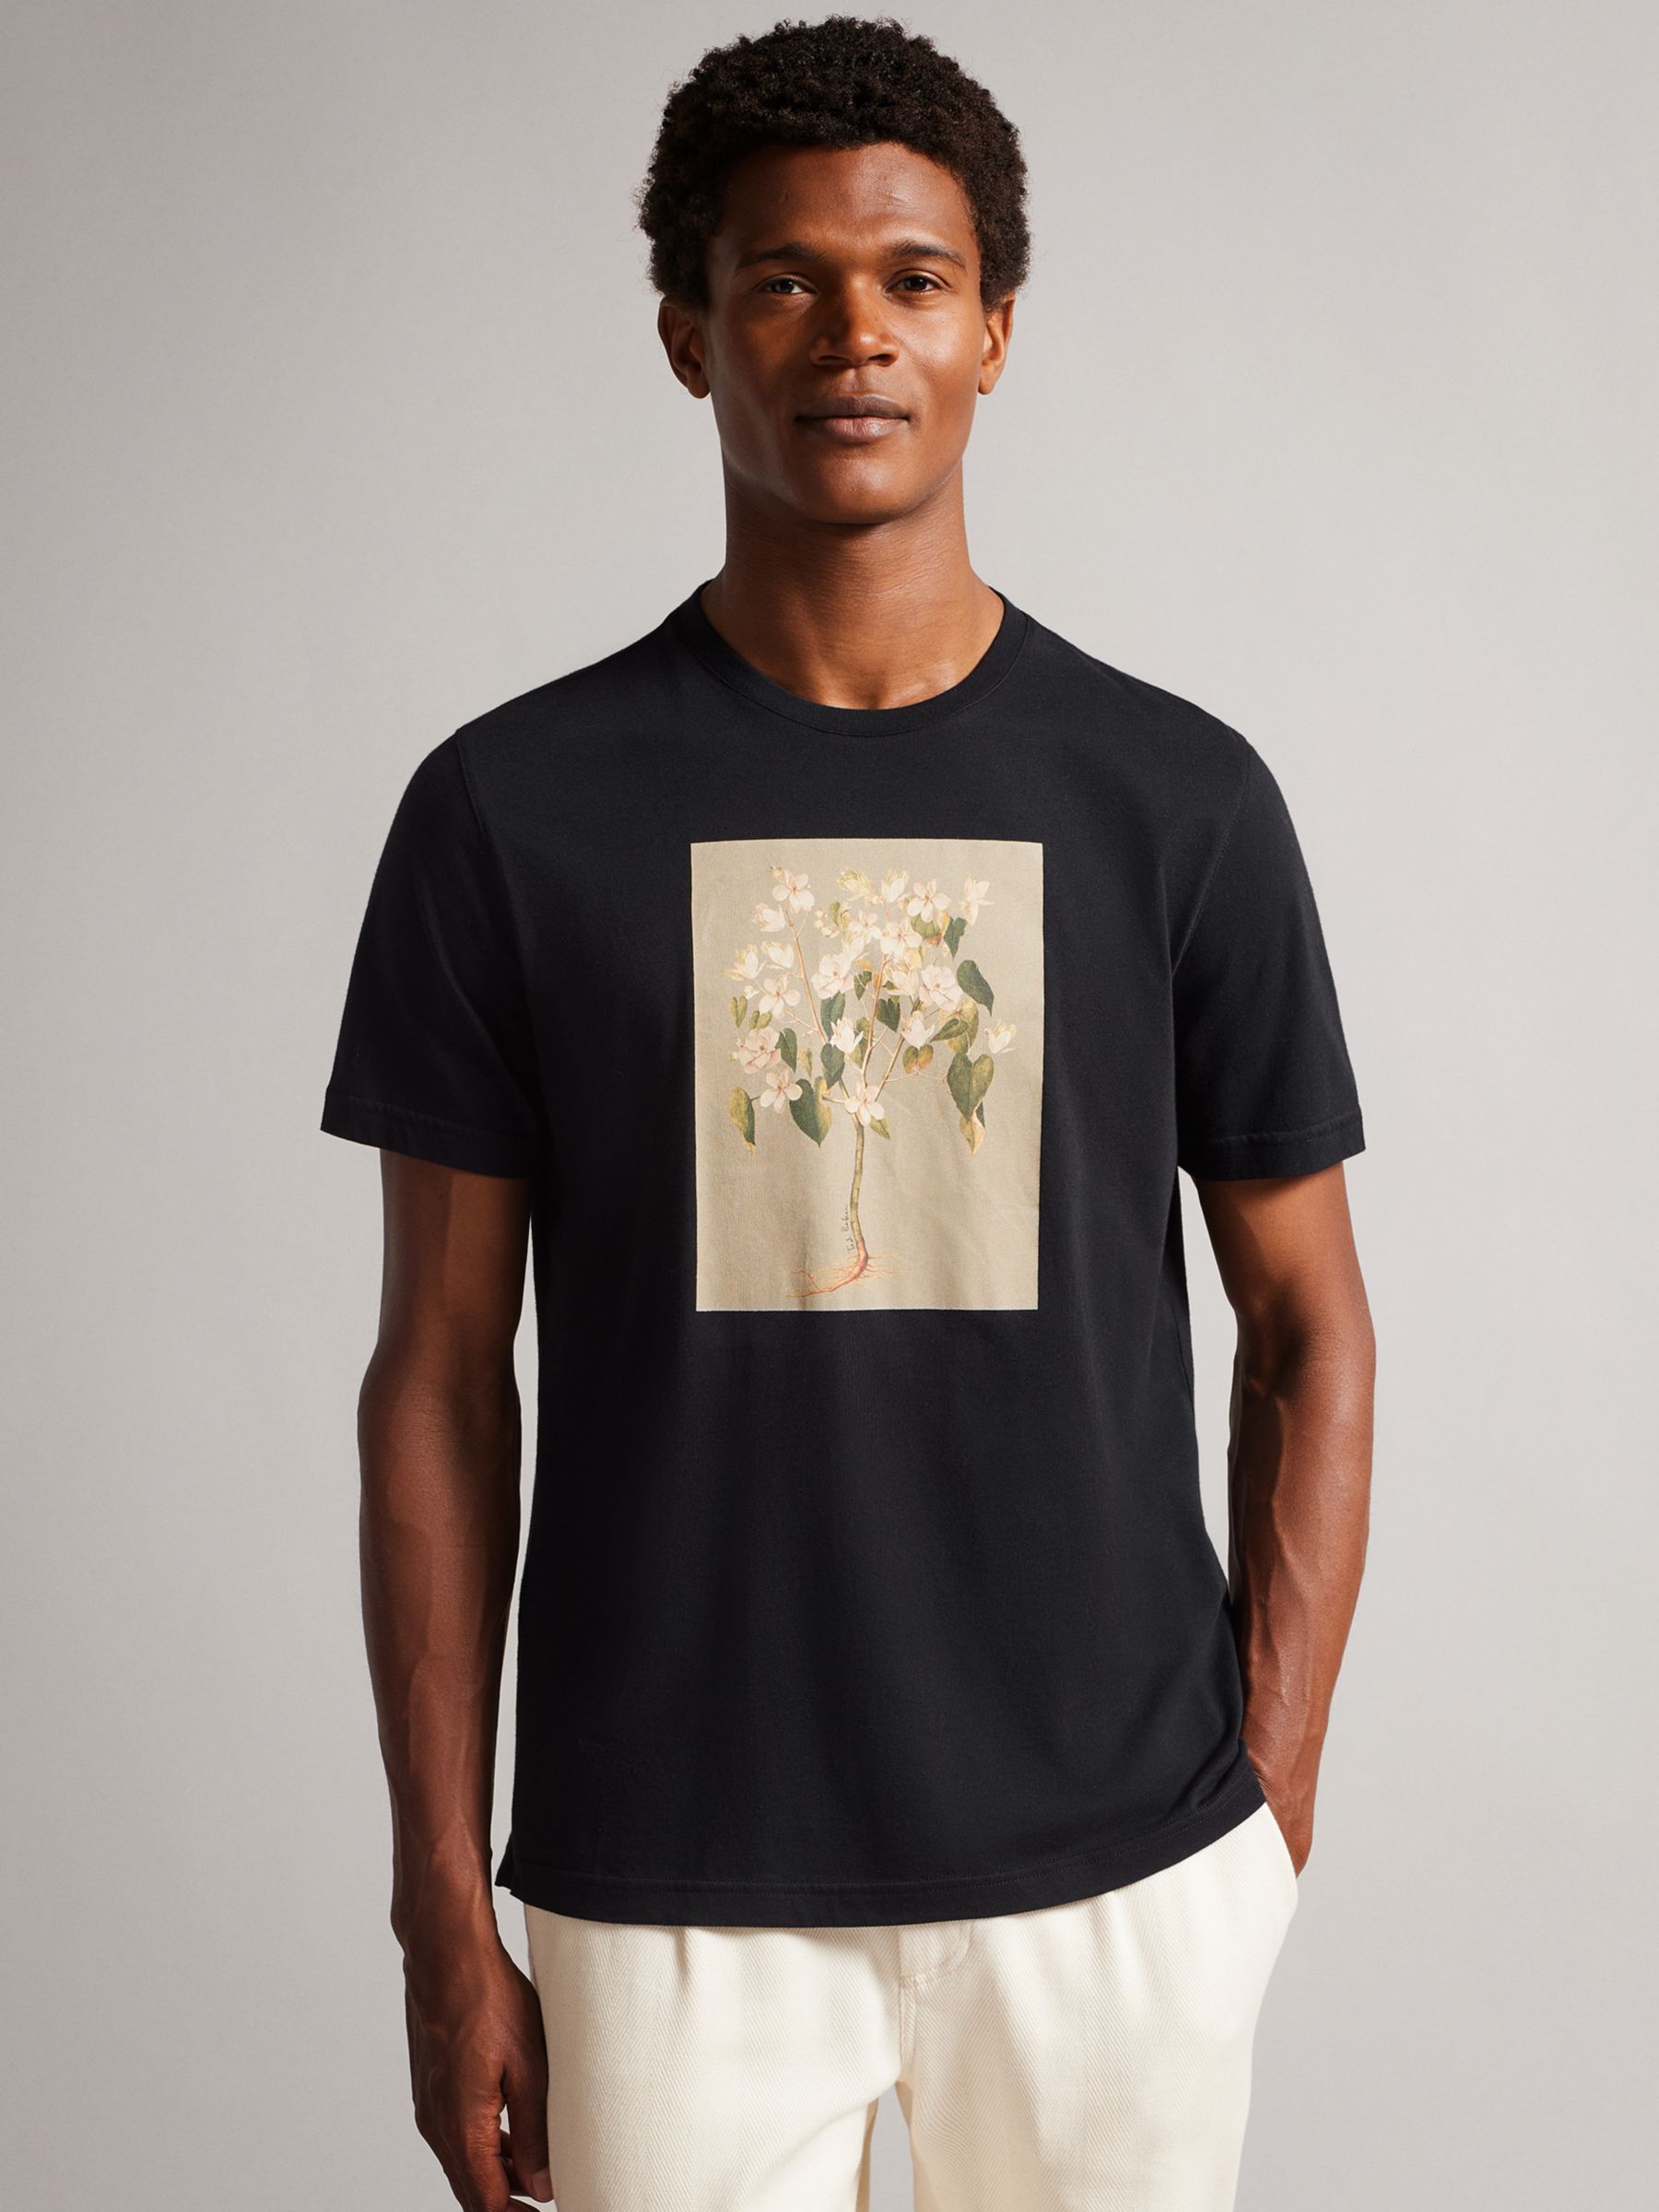 Kærlig input skære Ted Baker Glamak Floral Print T-Shirt, Black, XS